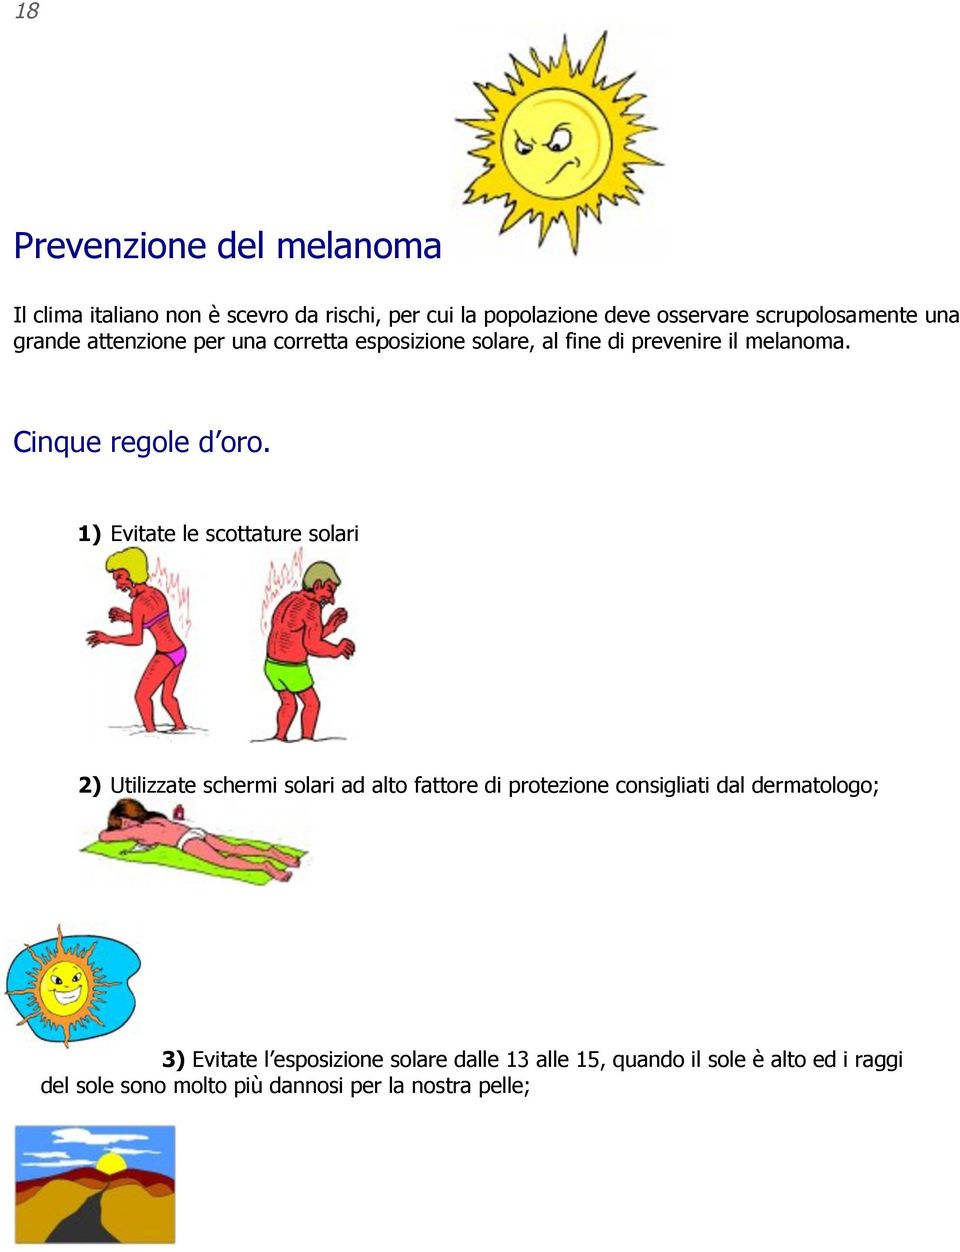 1) Evitate le scottature solari 2) Utilizzate schermi solari ad alto fattore di protezione consigliati dal dermatologo; 3)